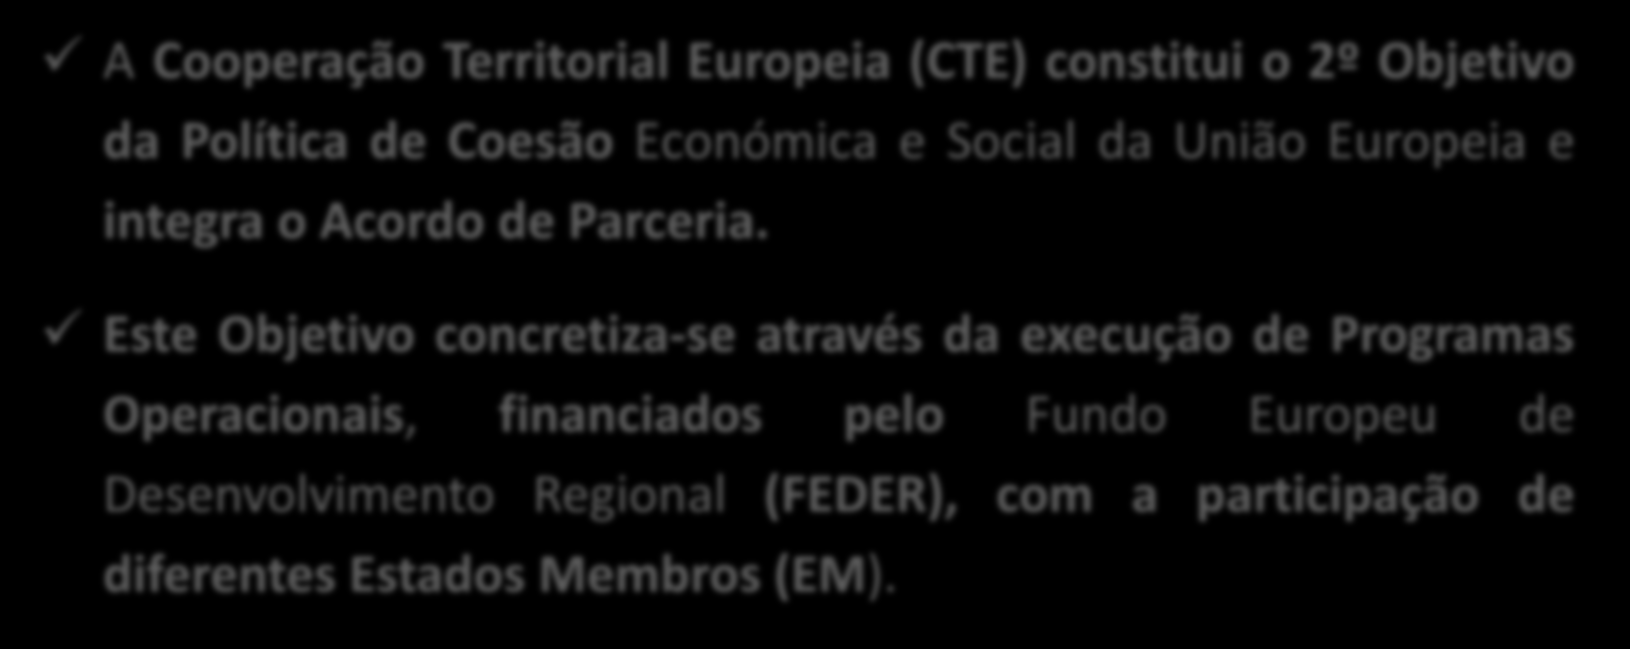 Enquadramento da CTE A Cooperação Territorial Europeia (CTE) constitui o 2º Objetivo da Política de Coesão Económica e Social da União Europeia e integra o Acordo de Parceria.